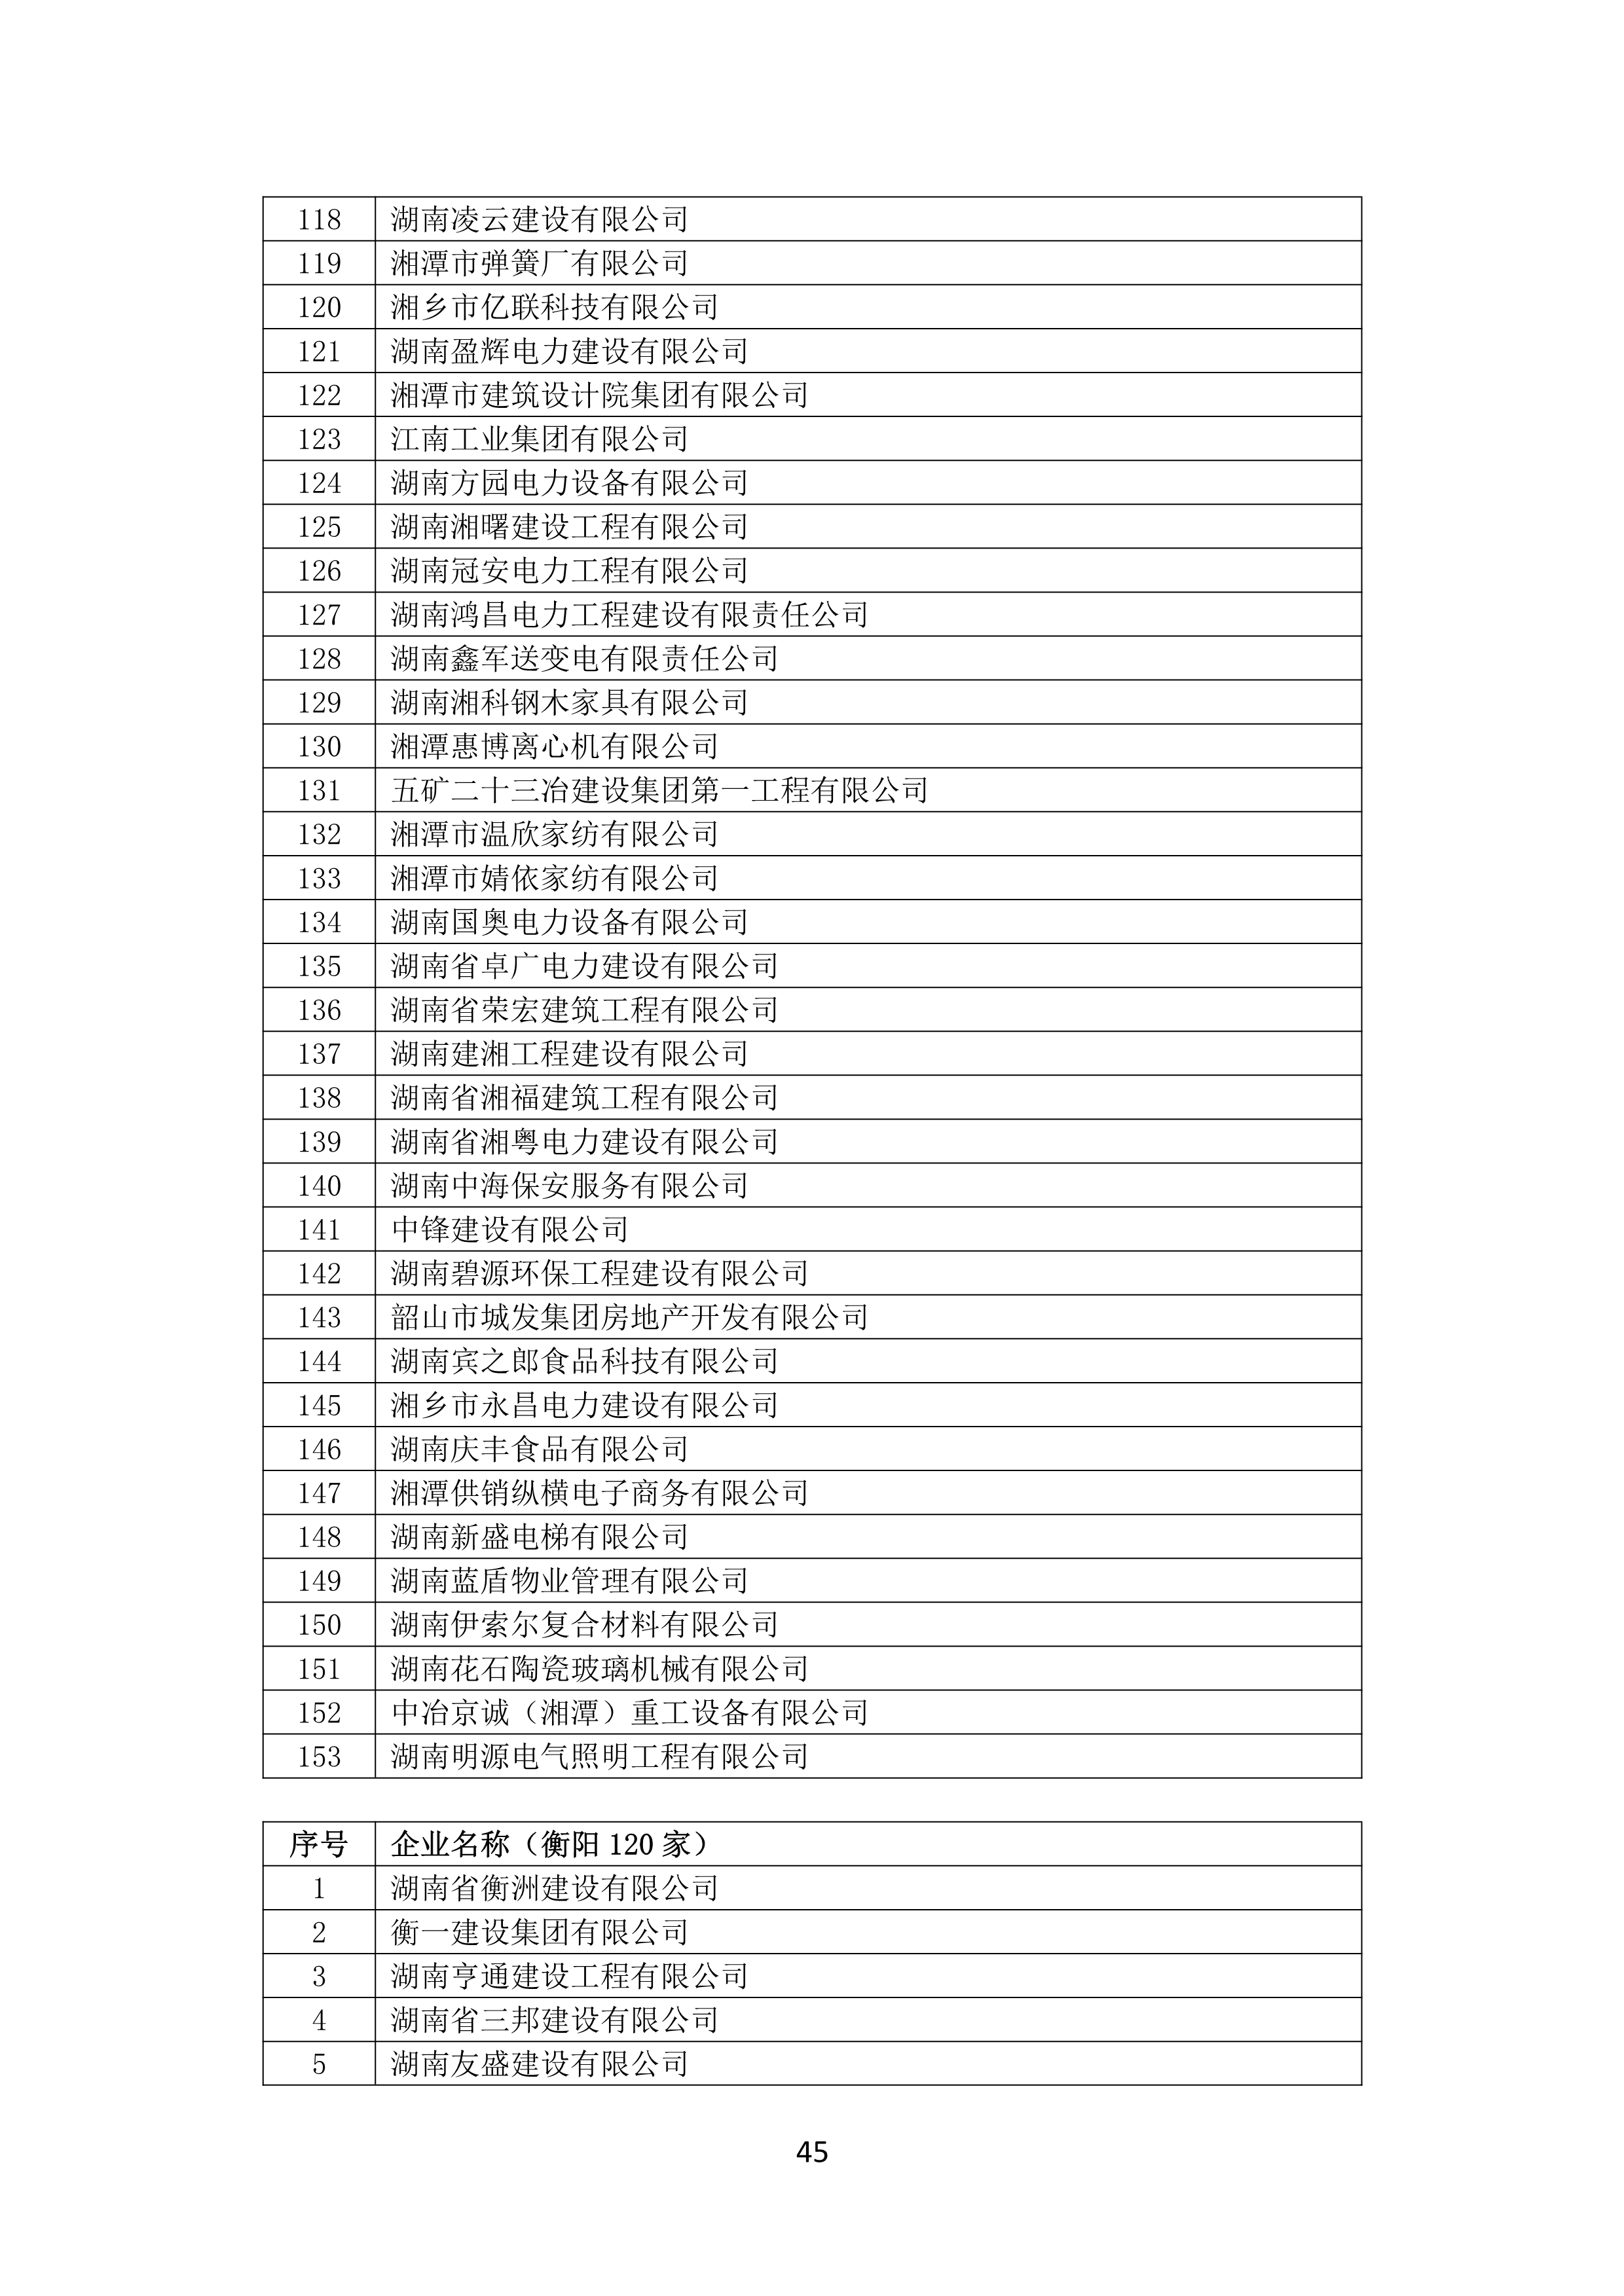 2021 年(nián)度湖南省守合同重信用企業名單_46.png